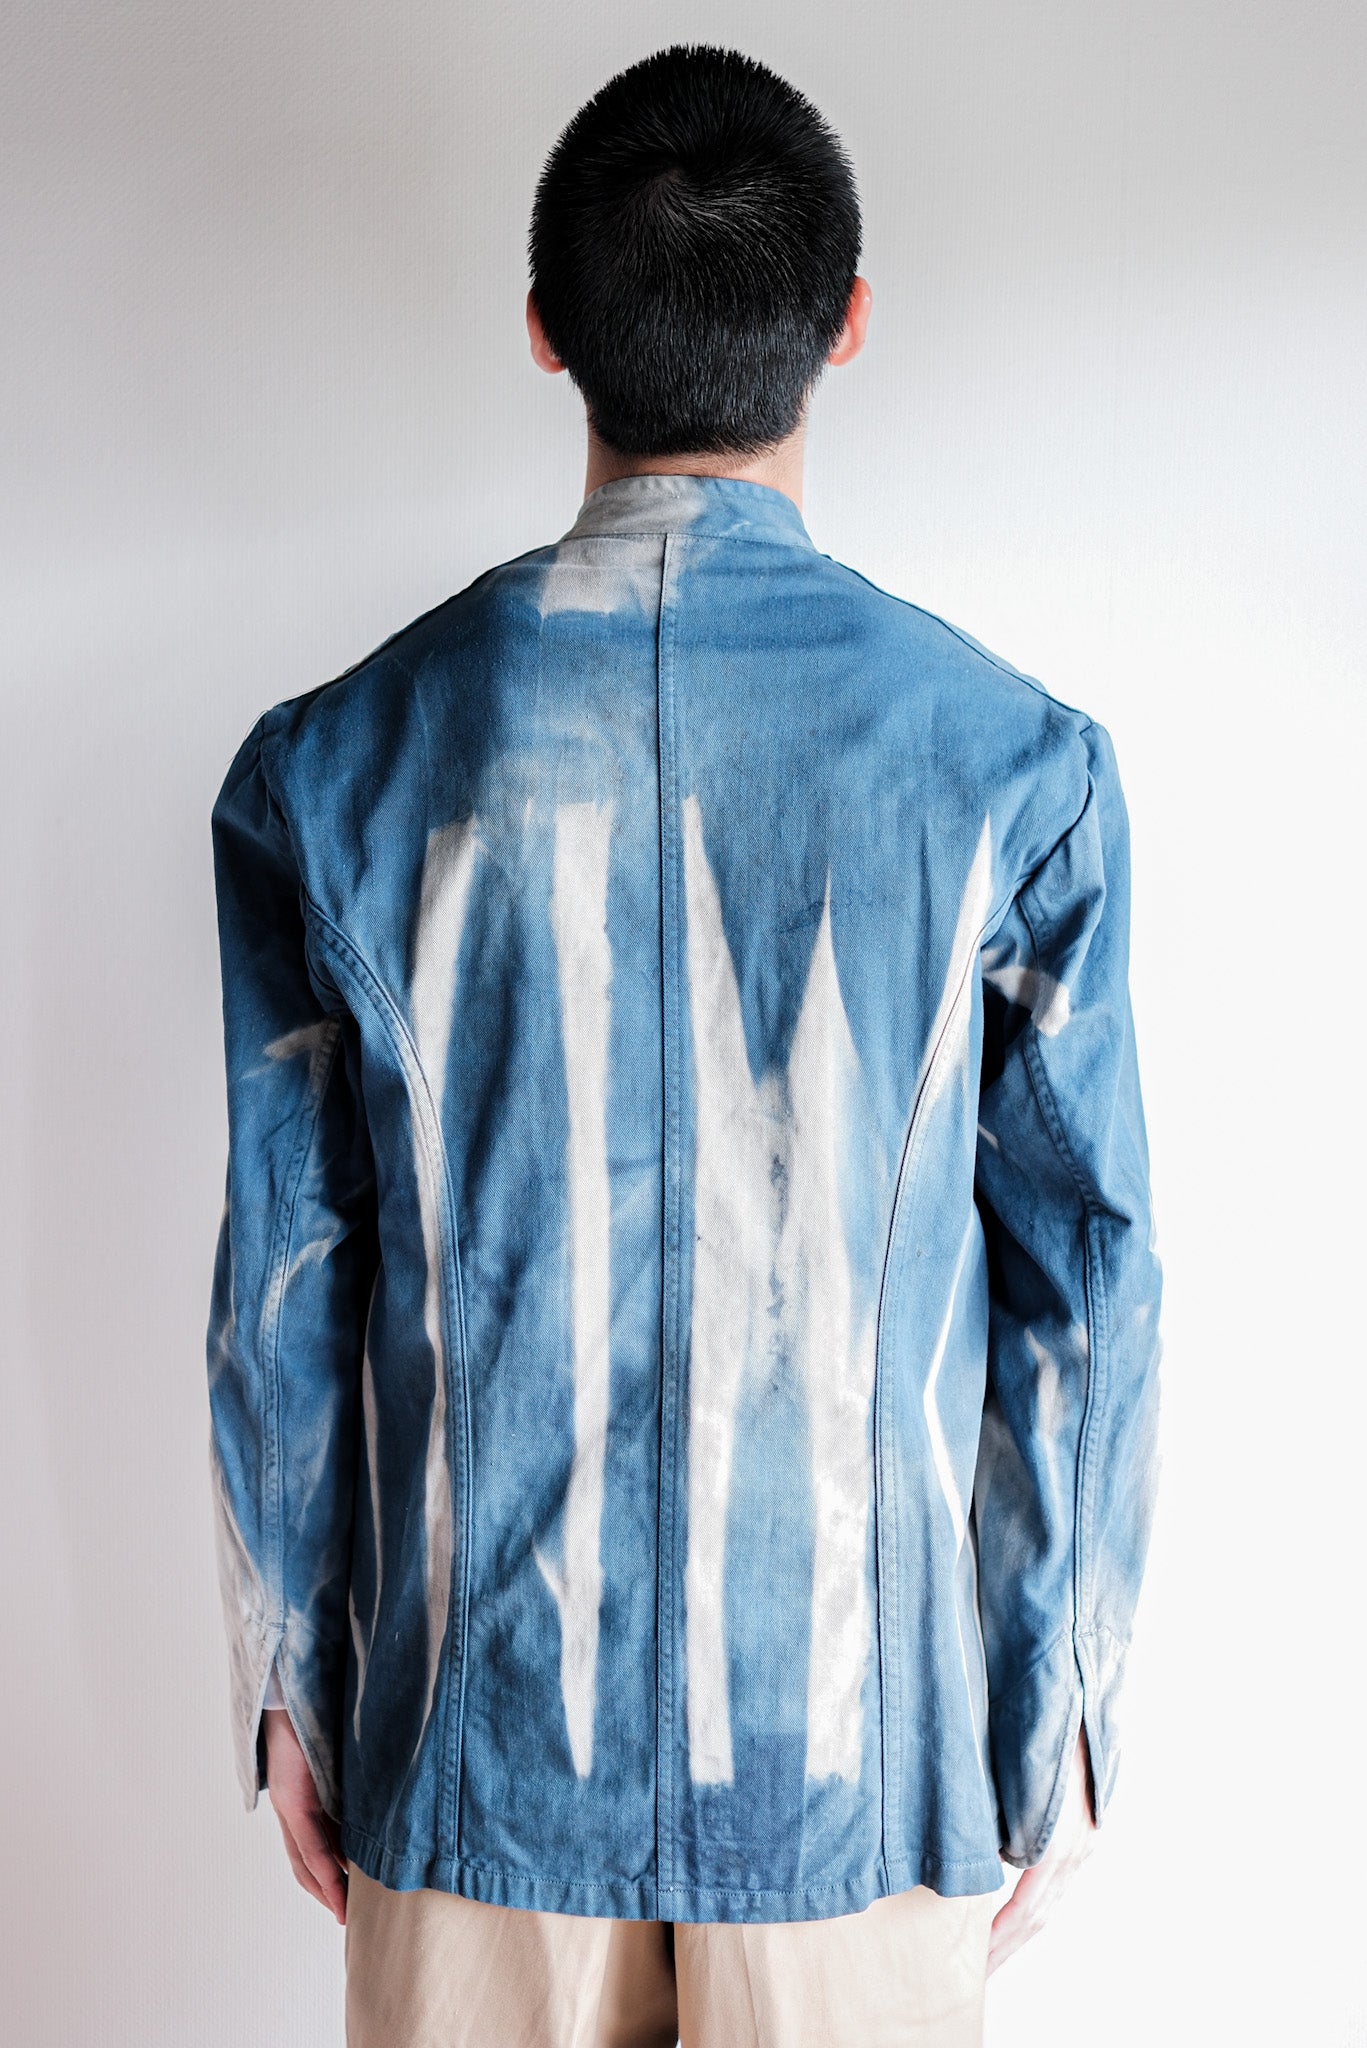 Veste de travail à double poitrine en coton indigo "Karim Hadjab" "4 Seasons"